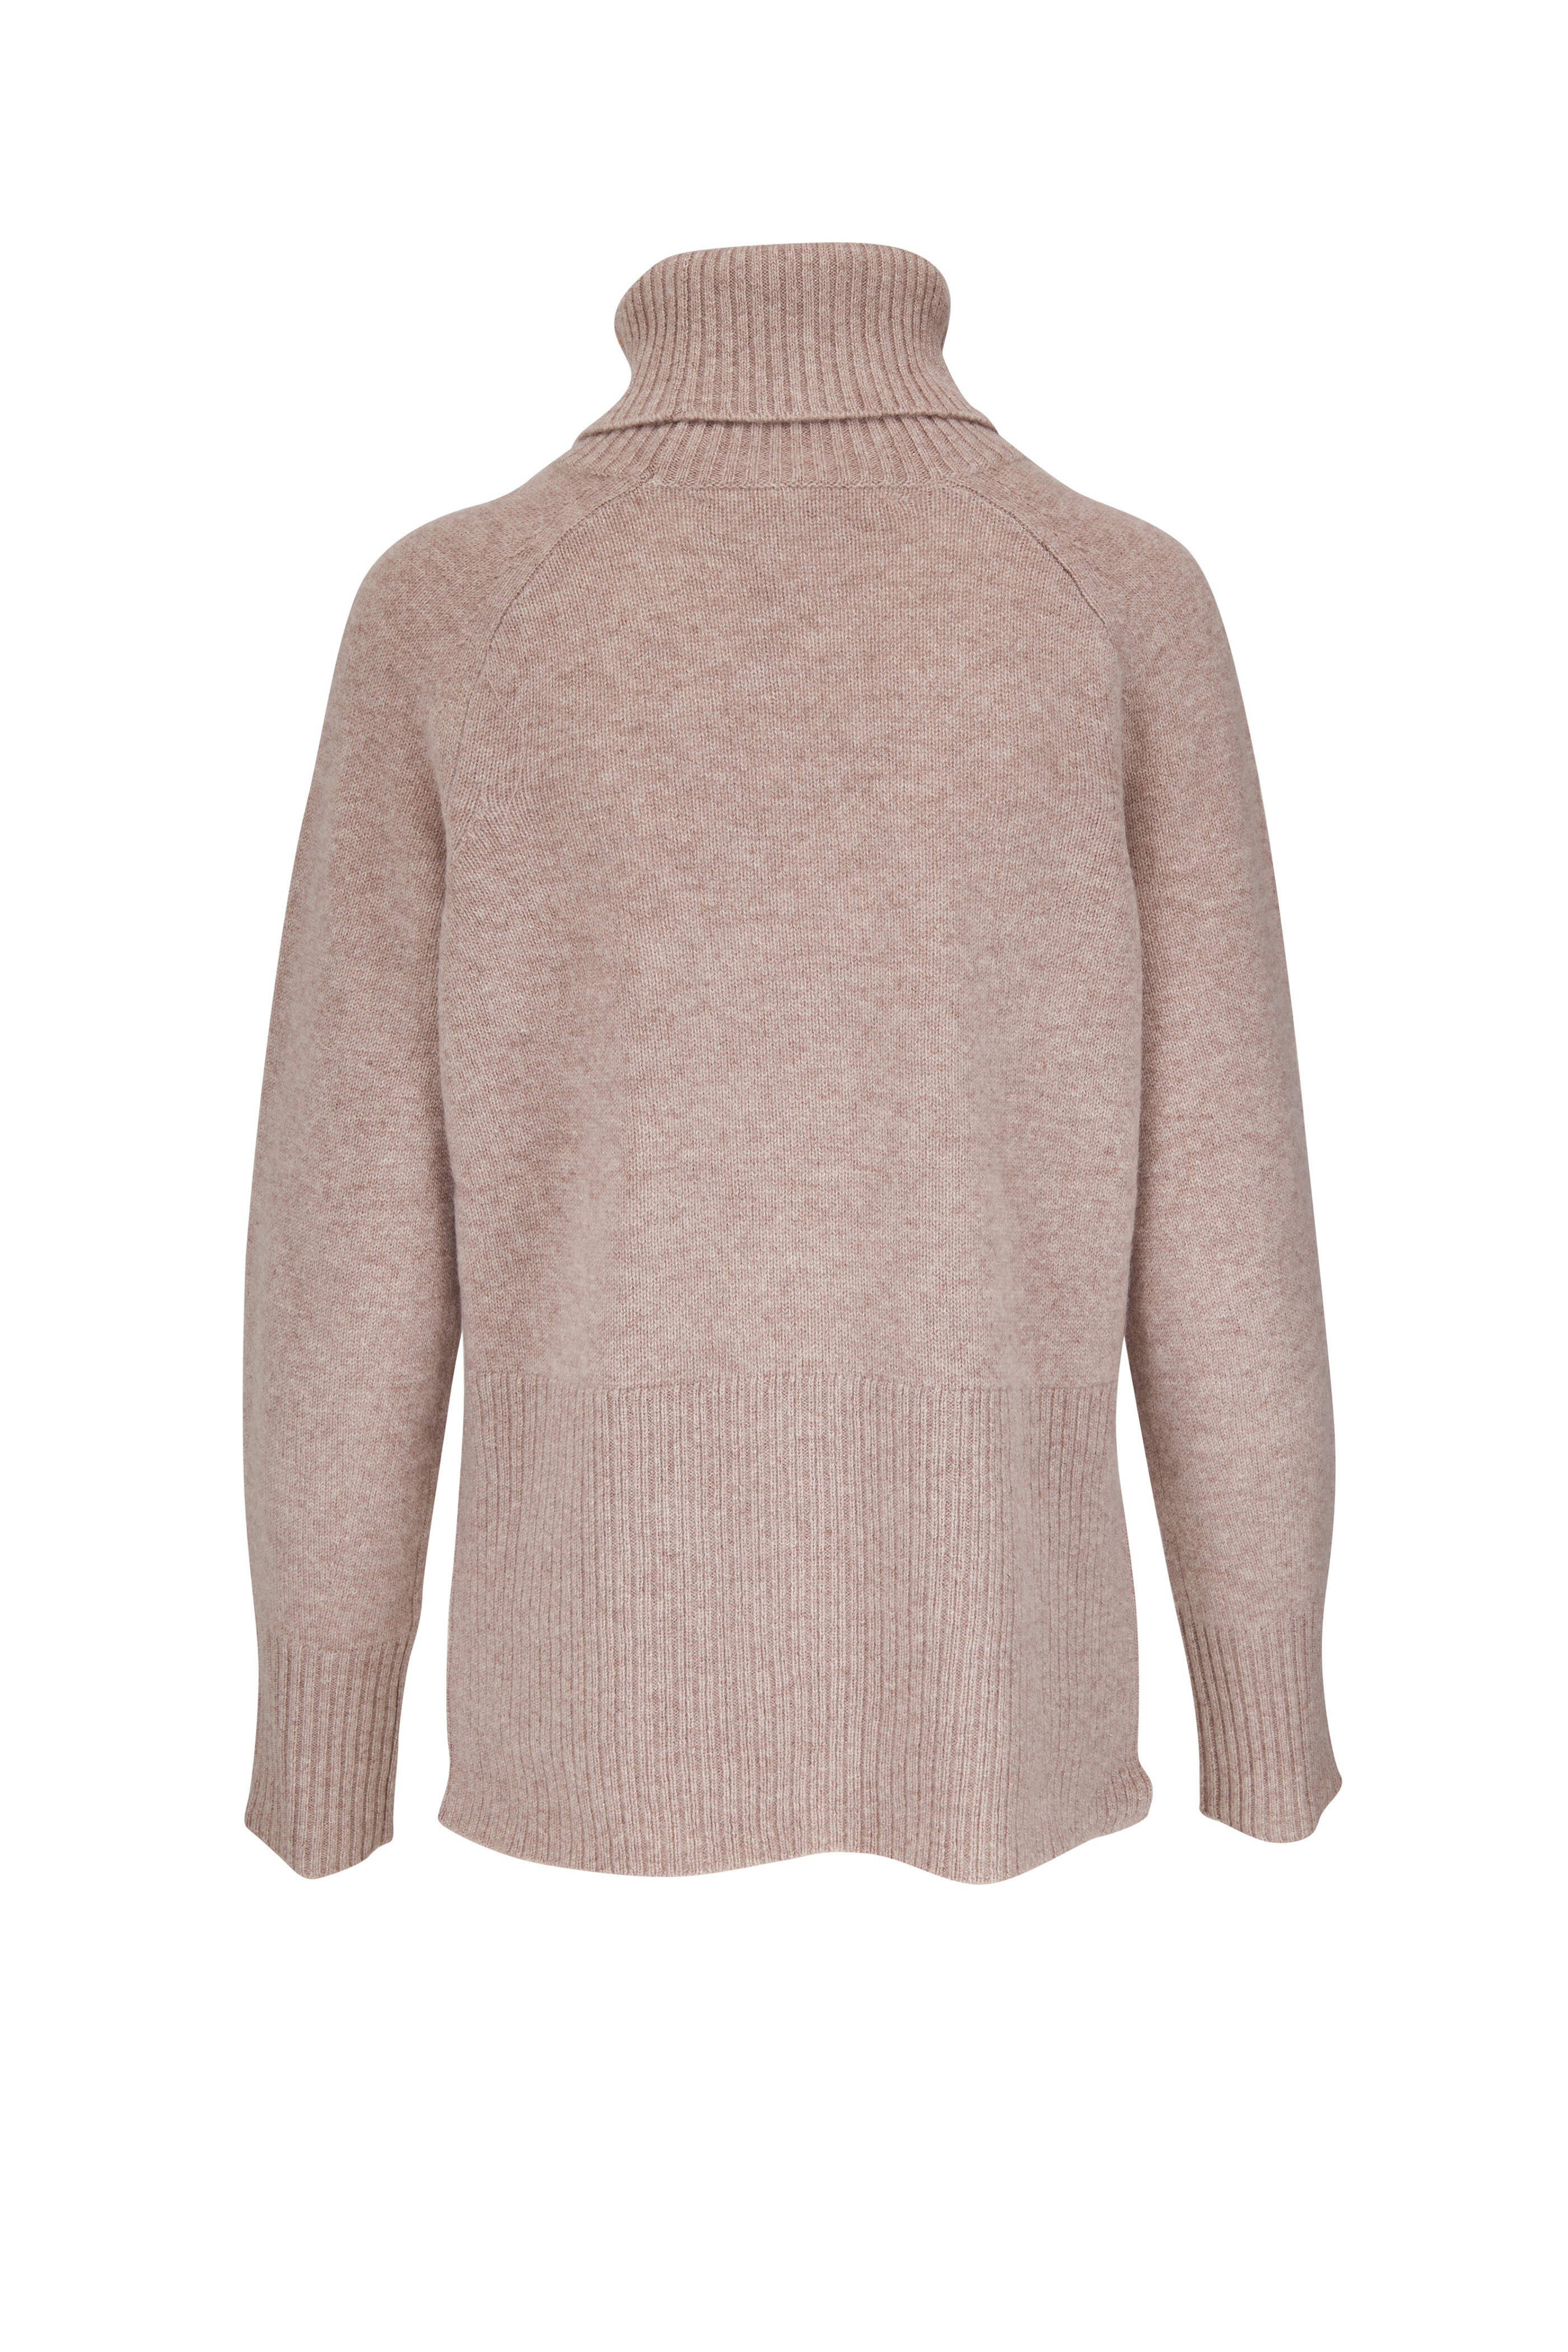 Veronica Beard - Lerato Taupe Cashmere Turtleneck Sweater